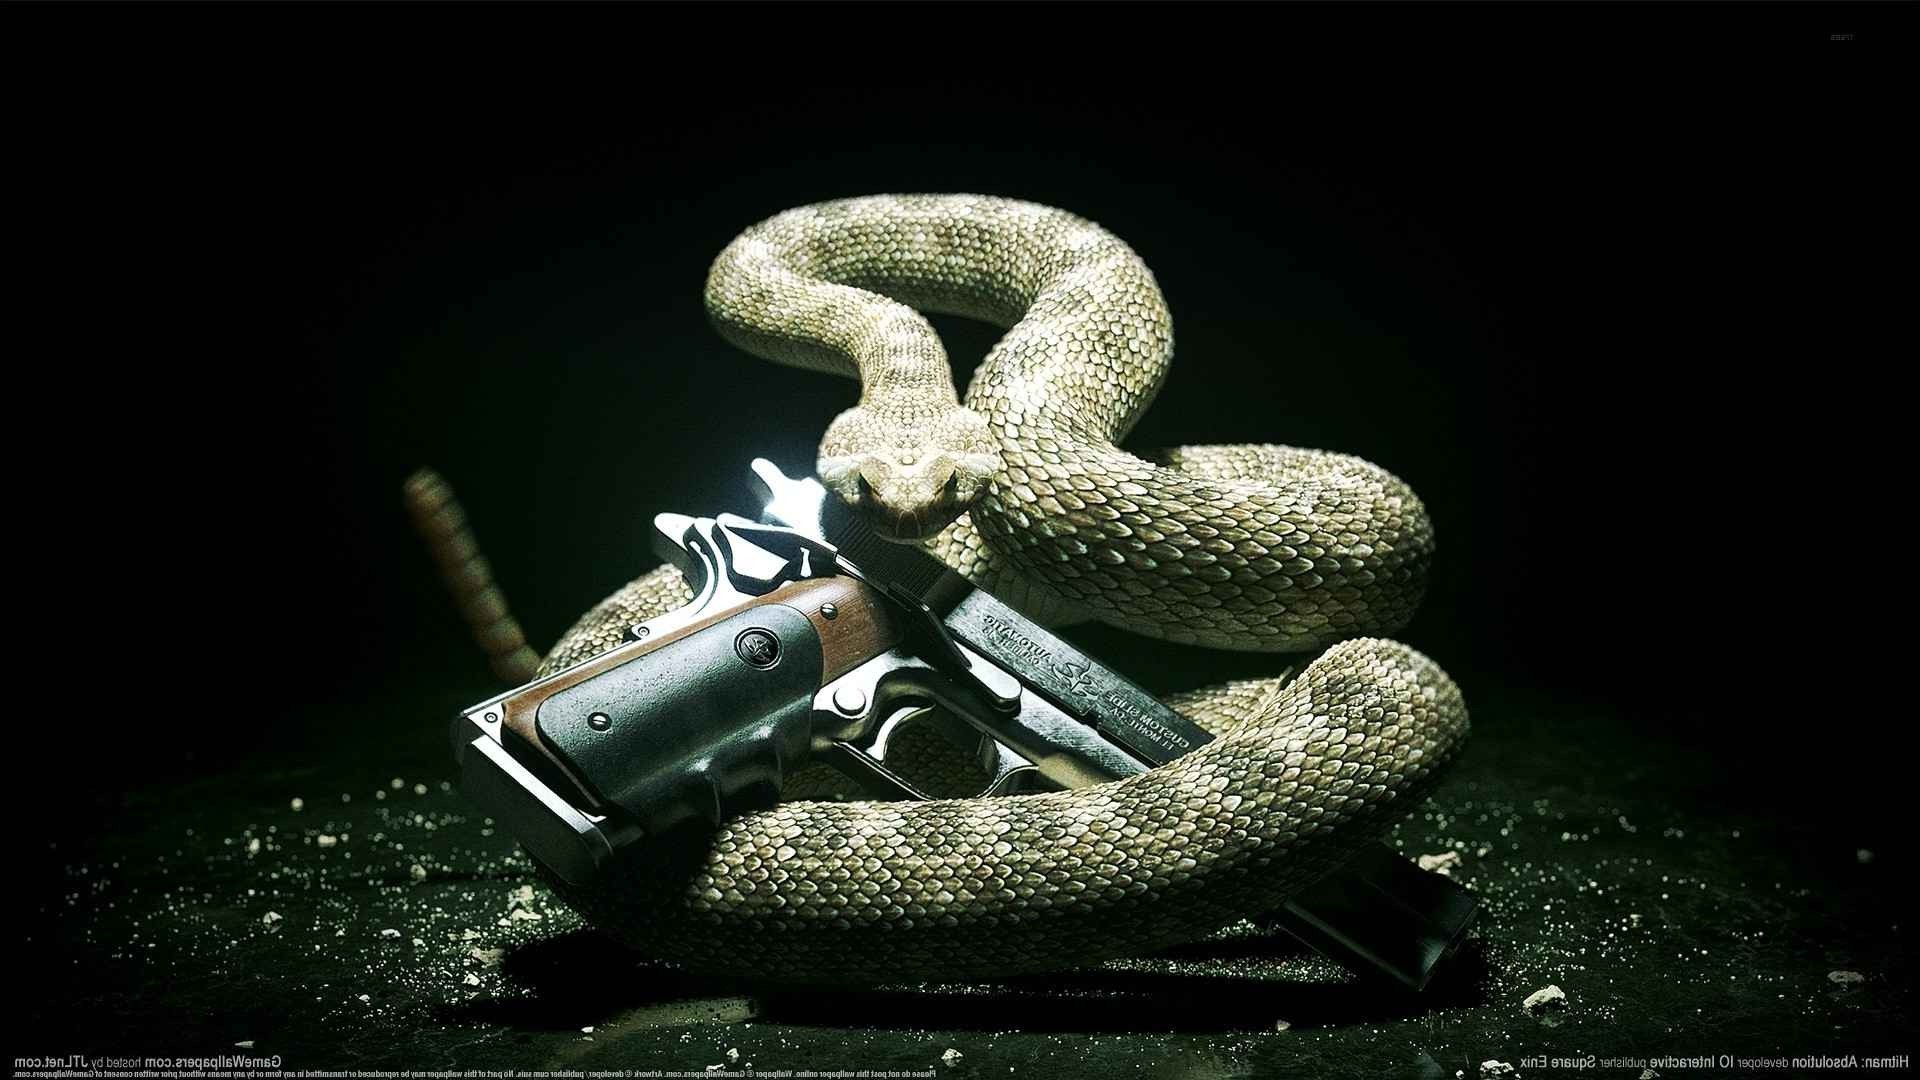 hitman absolution snake pc gaming gun Wallpaper